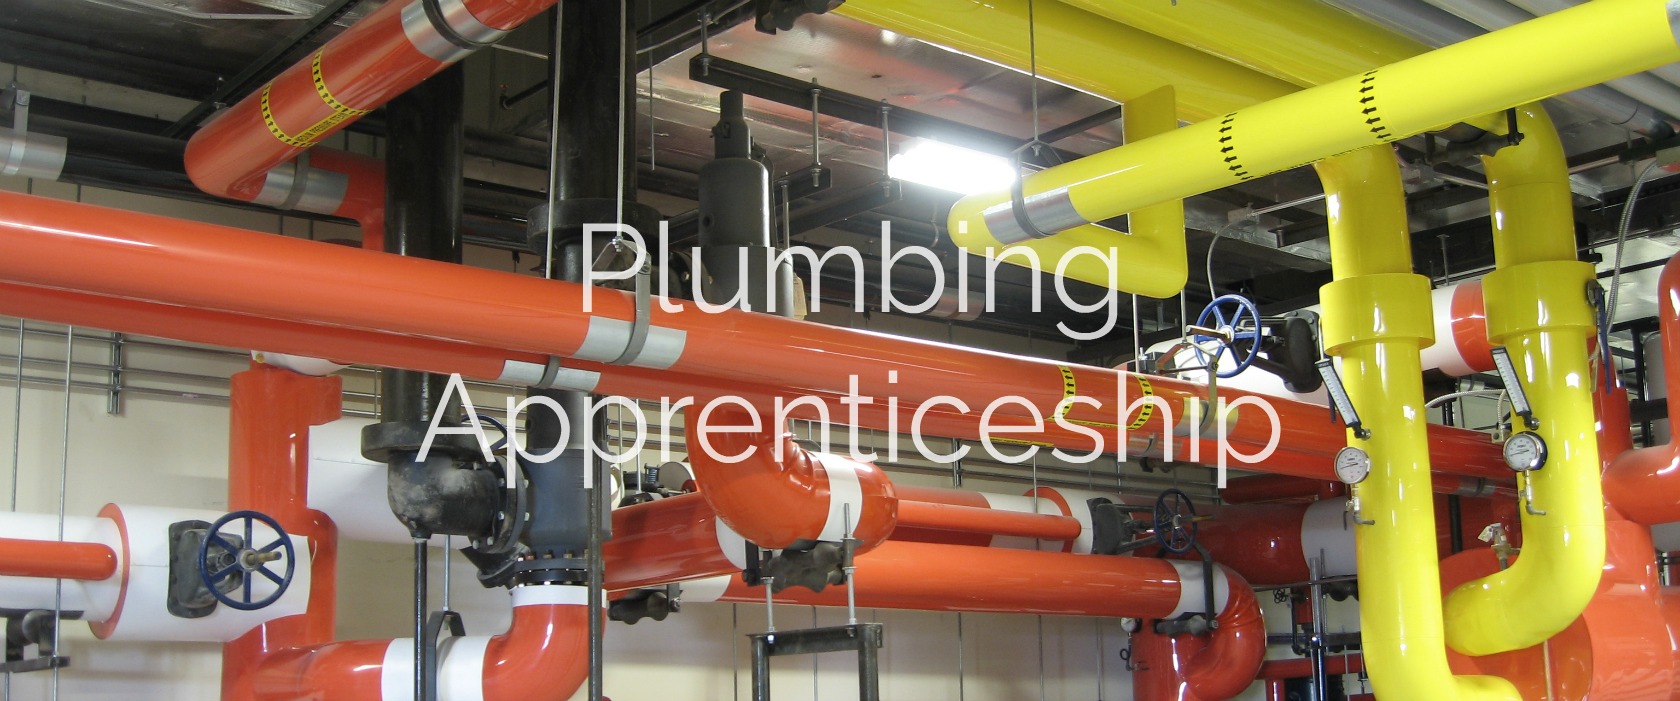 plumbing-apprenticeship